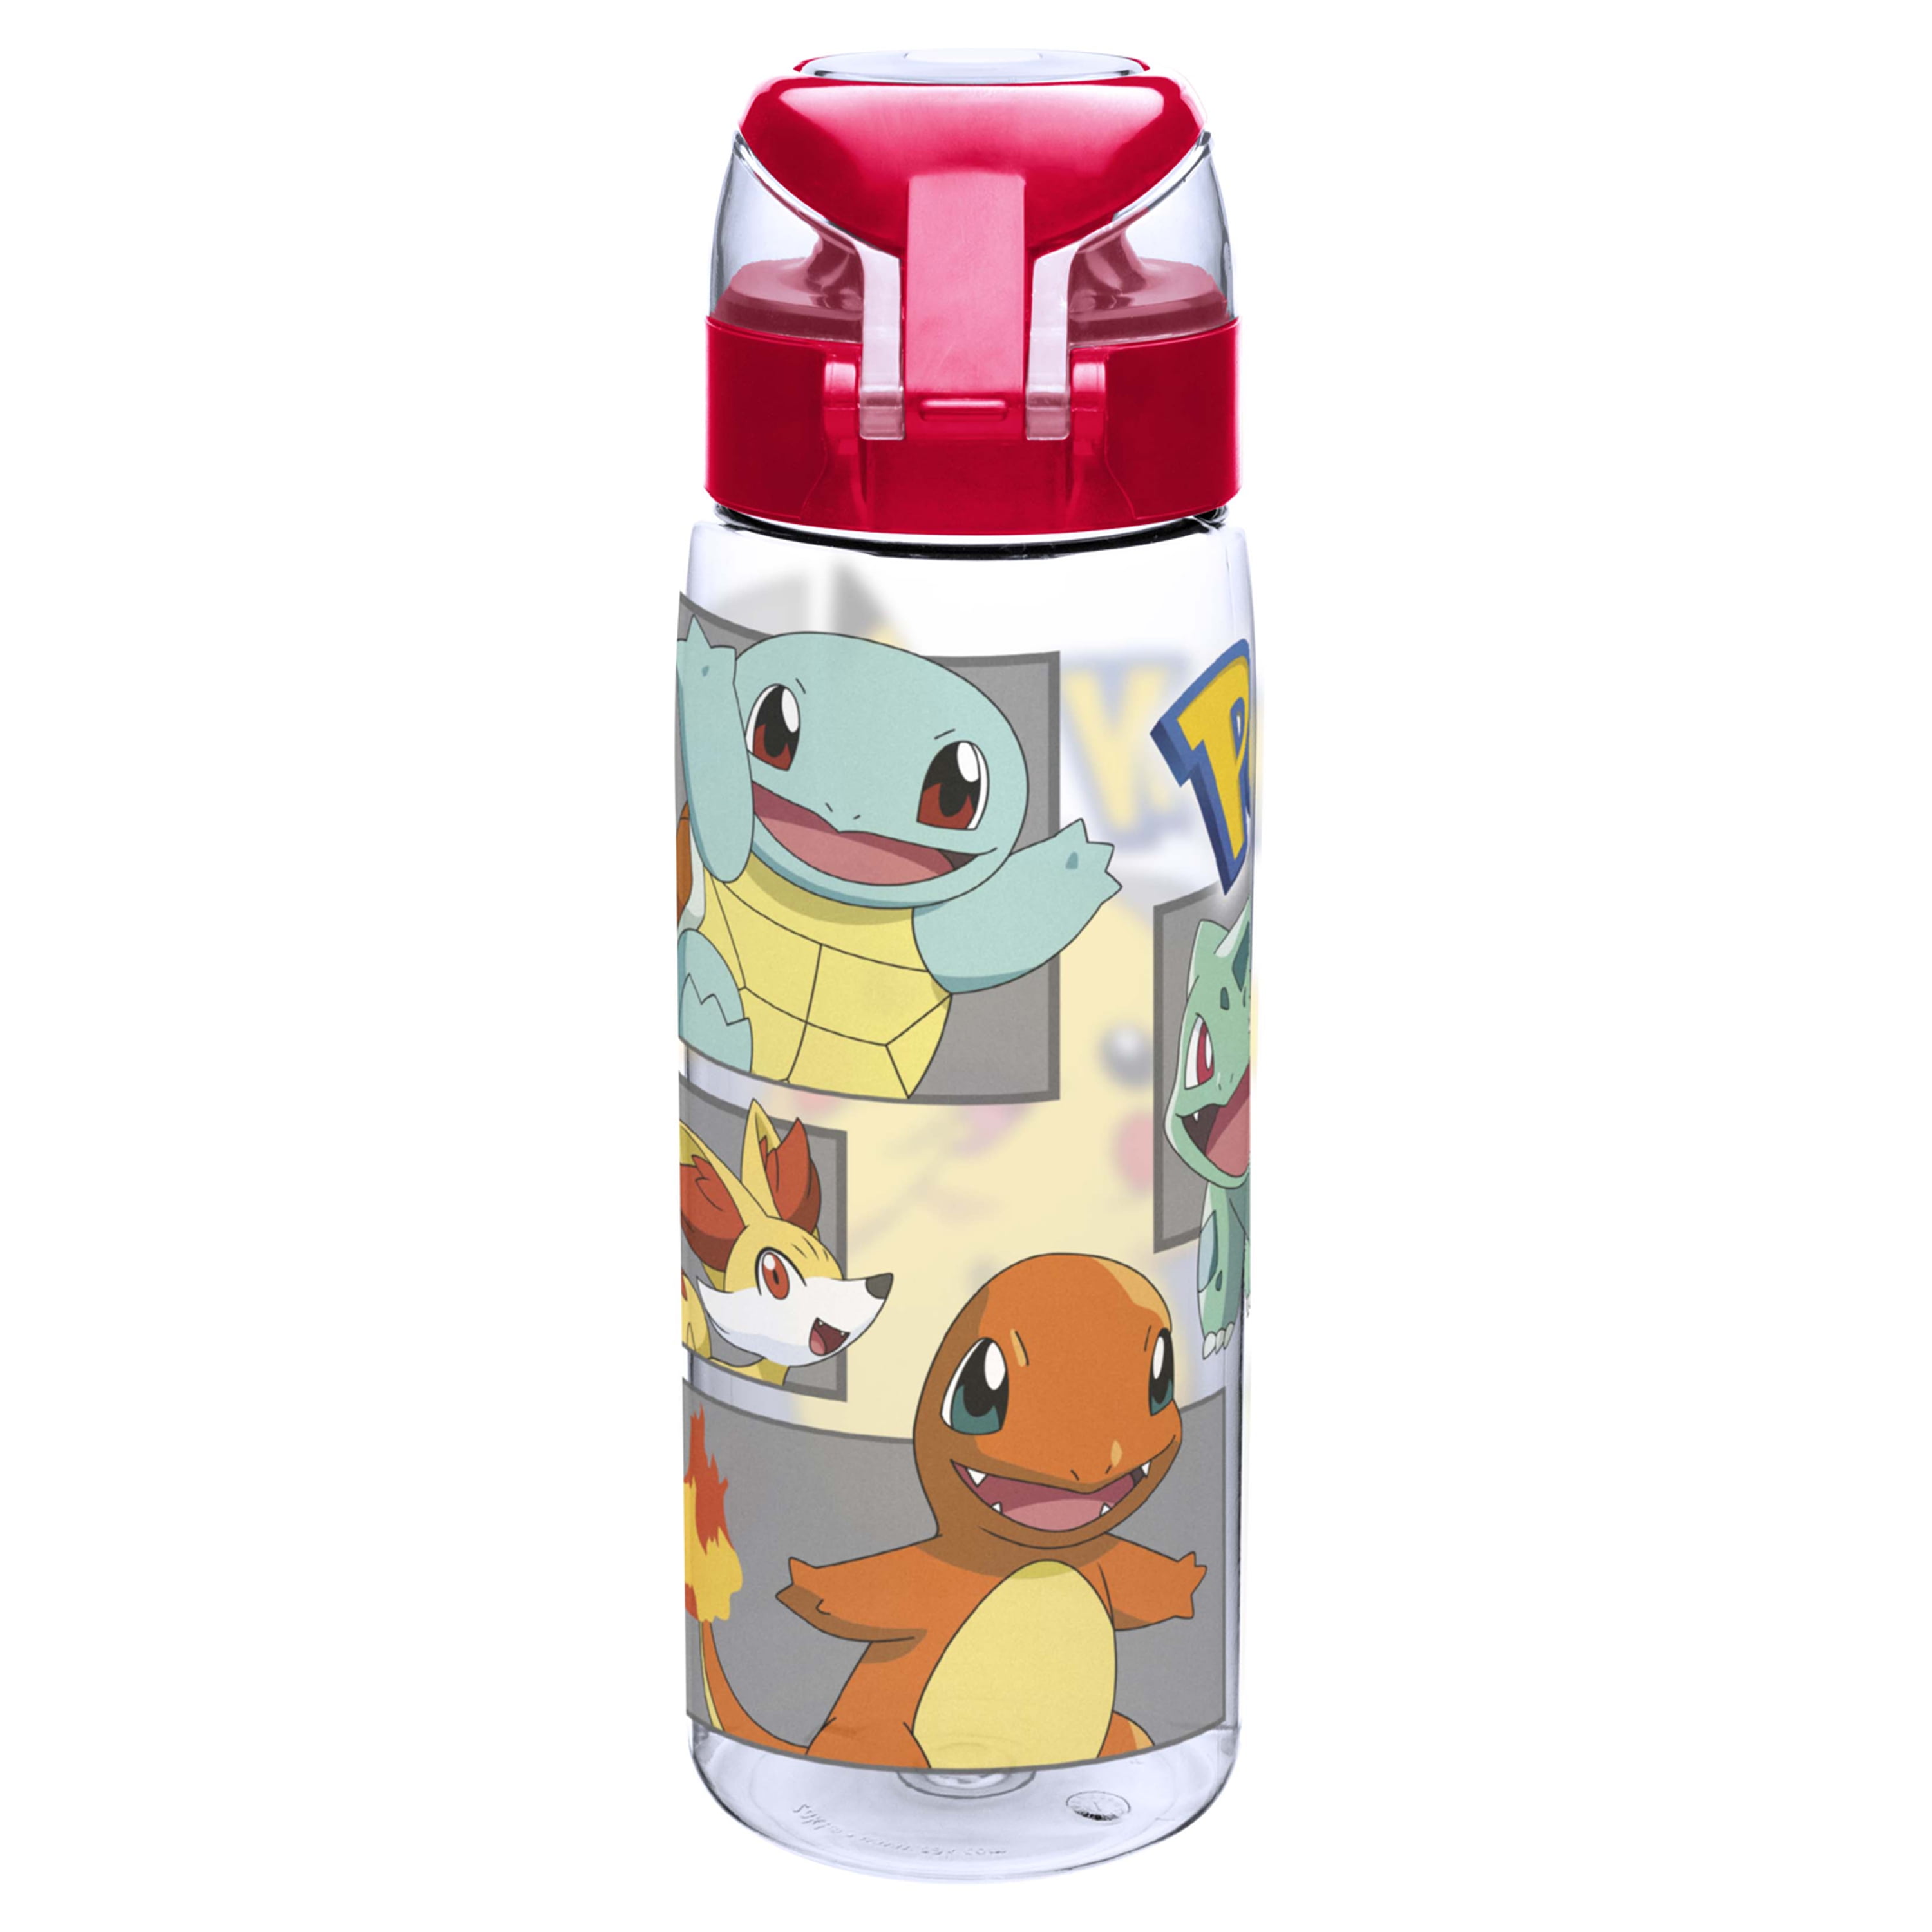 Pokémon - Pikachu Bottle 500ml